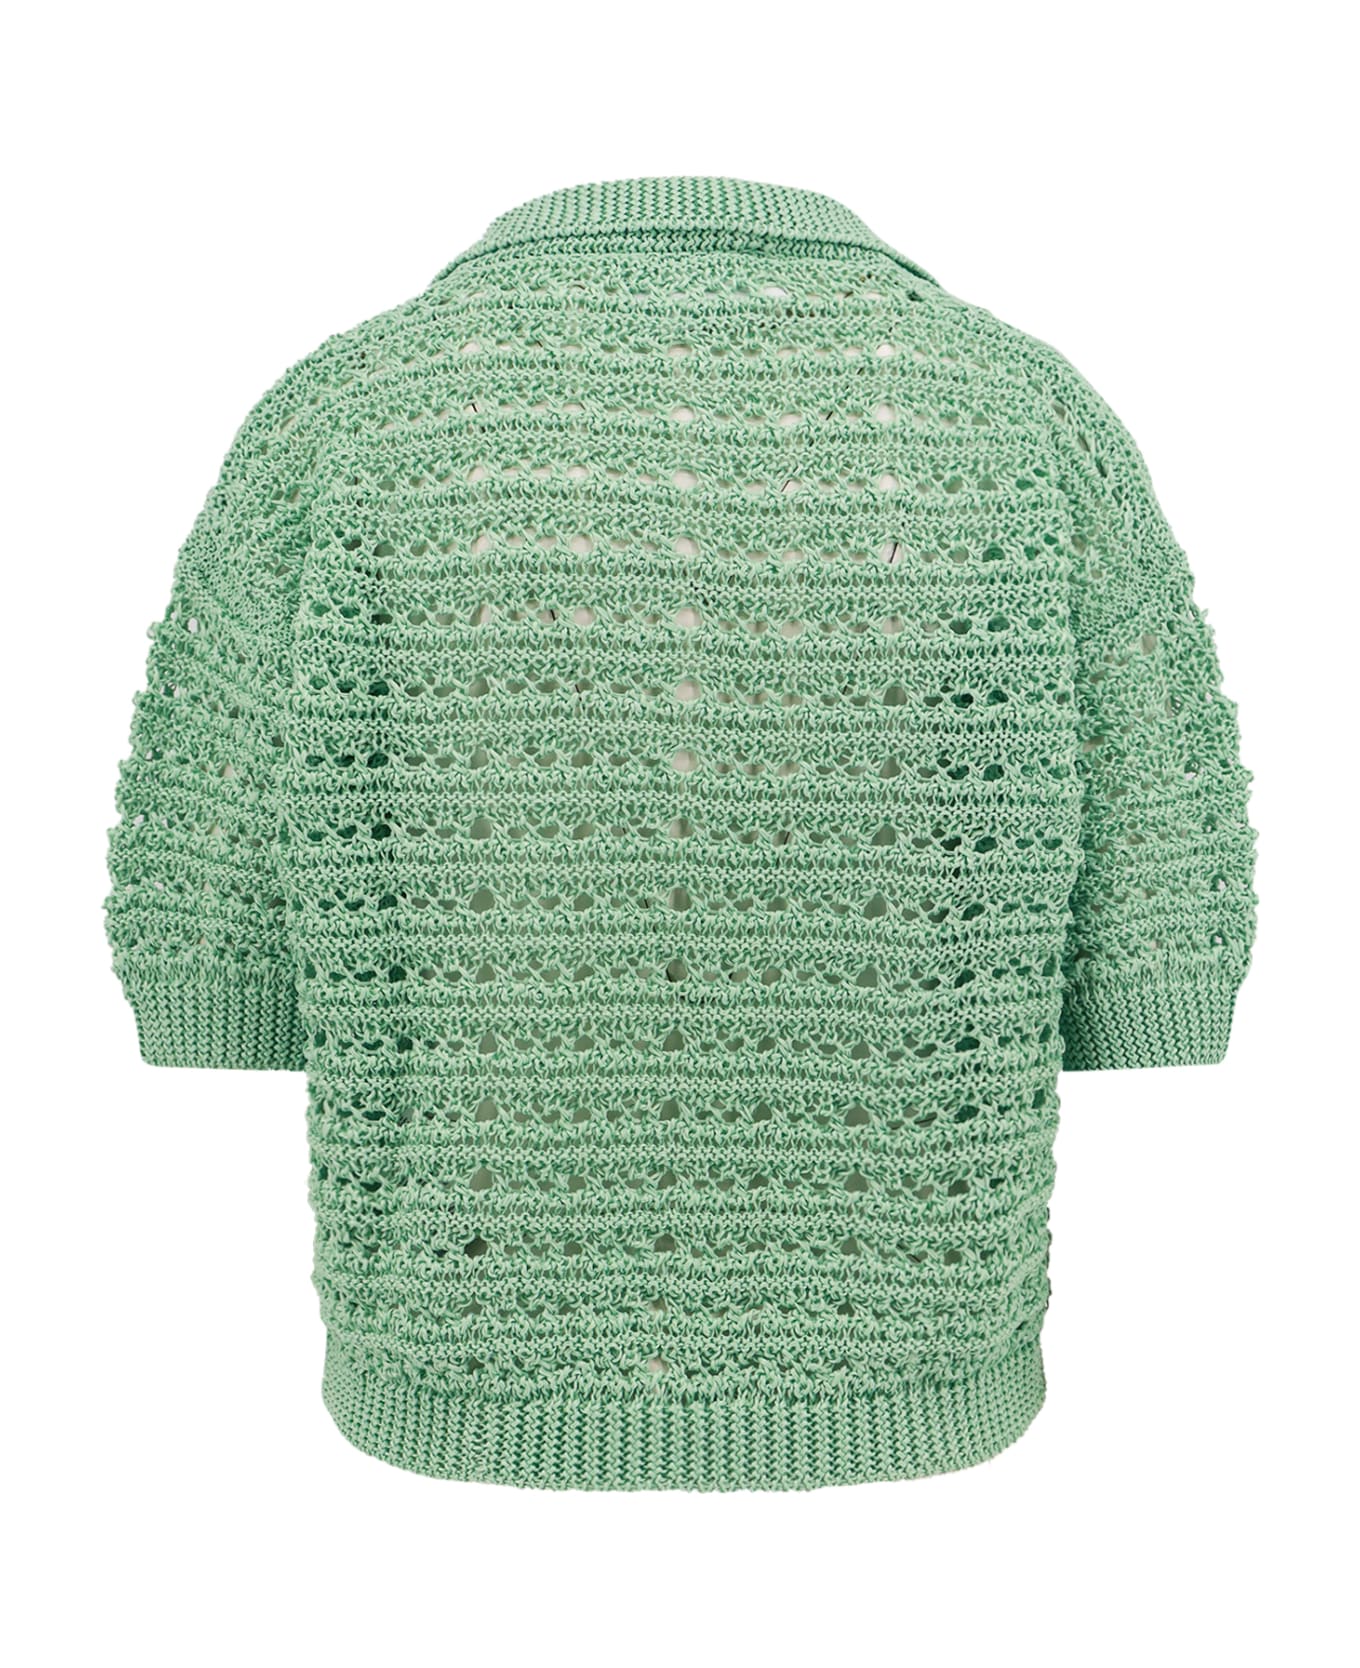 Erika Cavallini Sweater - Green